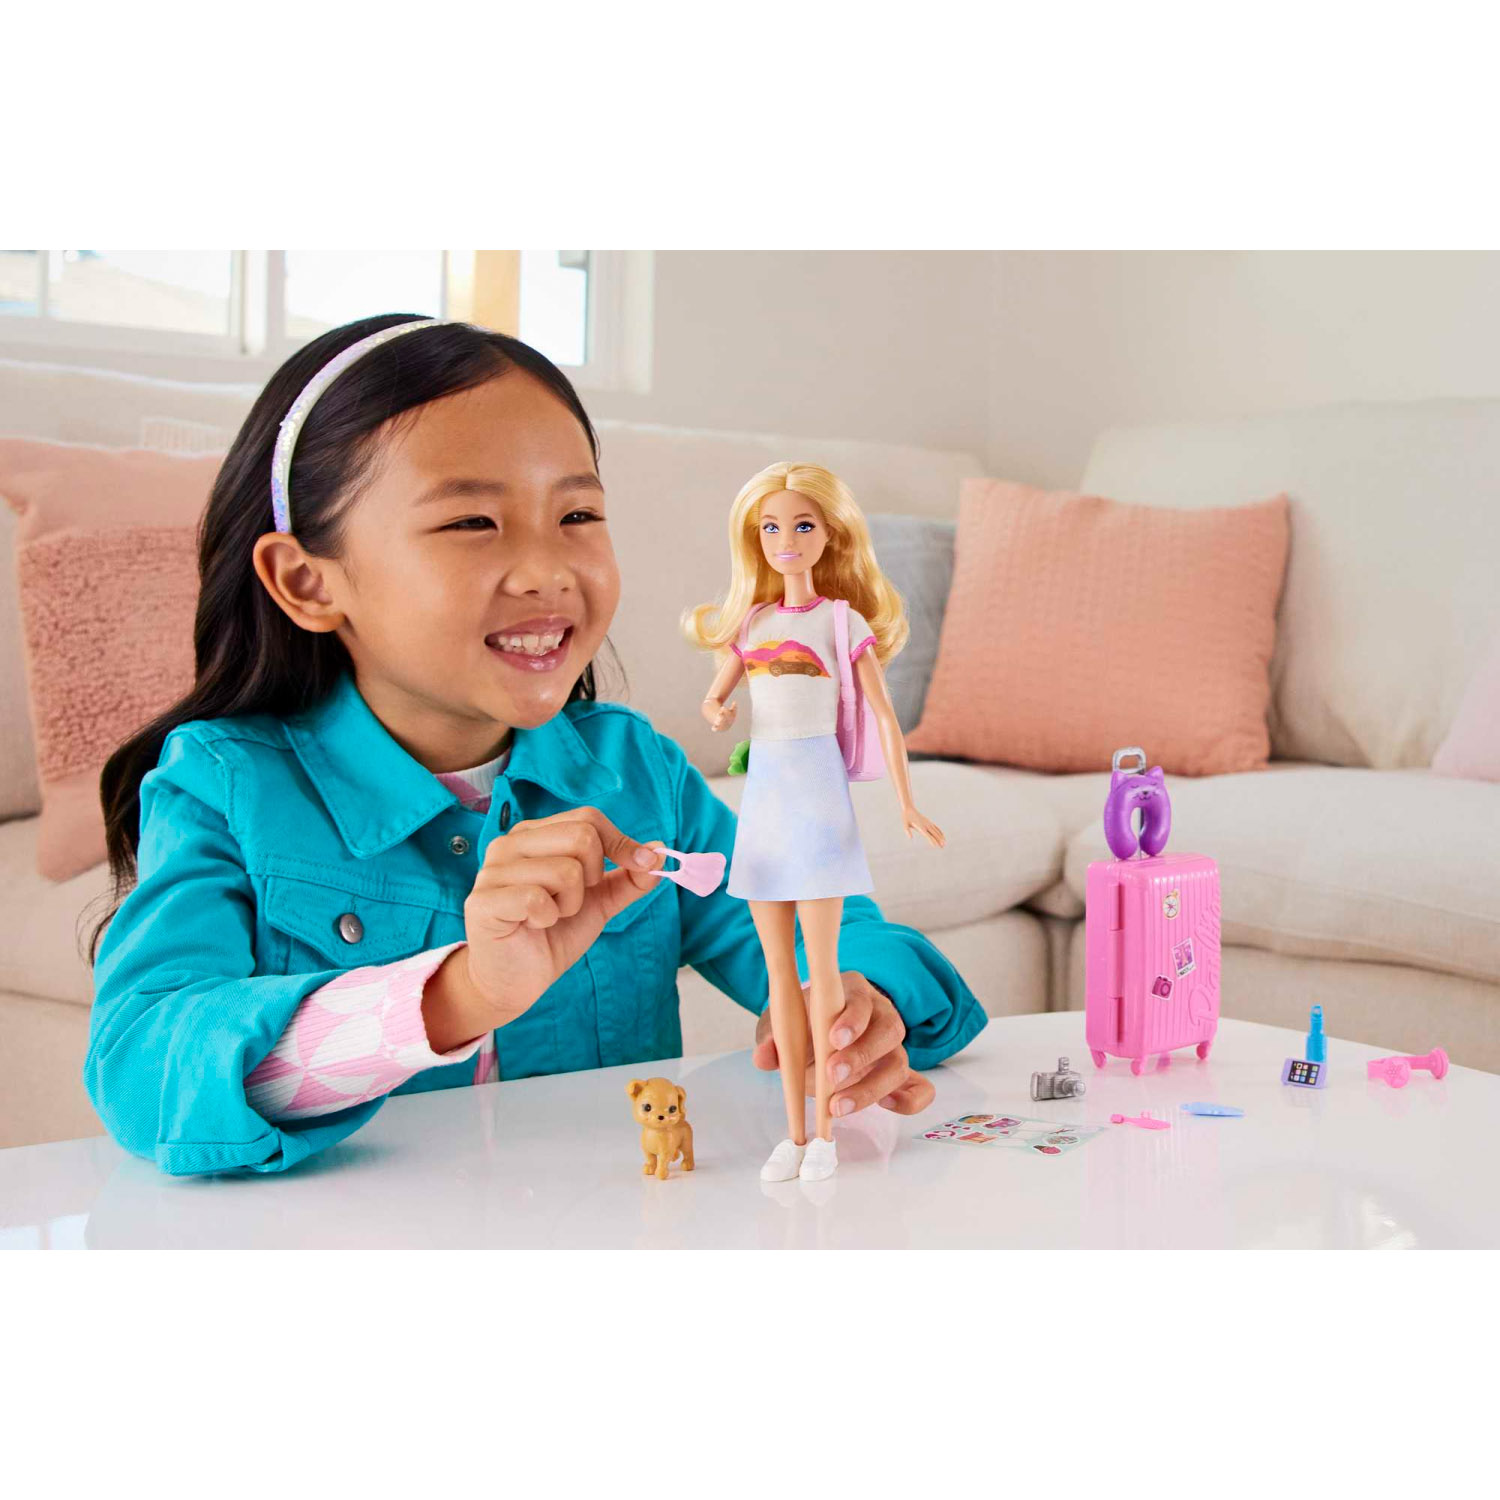 Barbie Set Da Viaggio Malibu, Bambola con cagnolino e valigie con rotelle incluse - Barbie